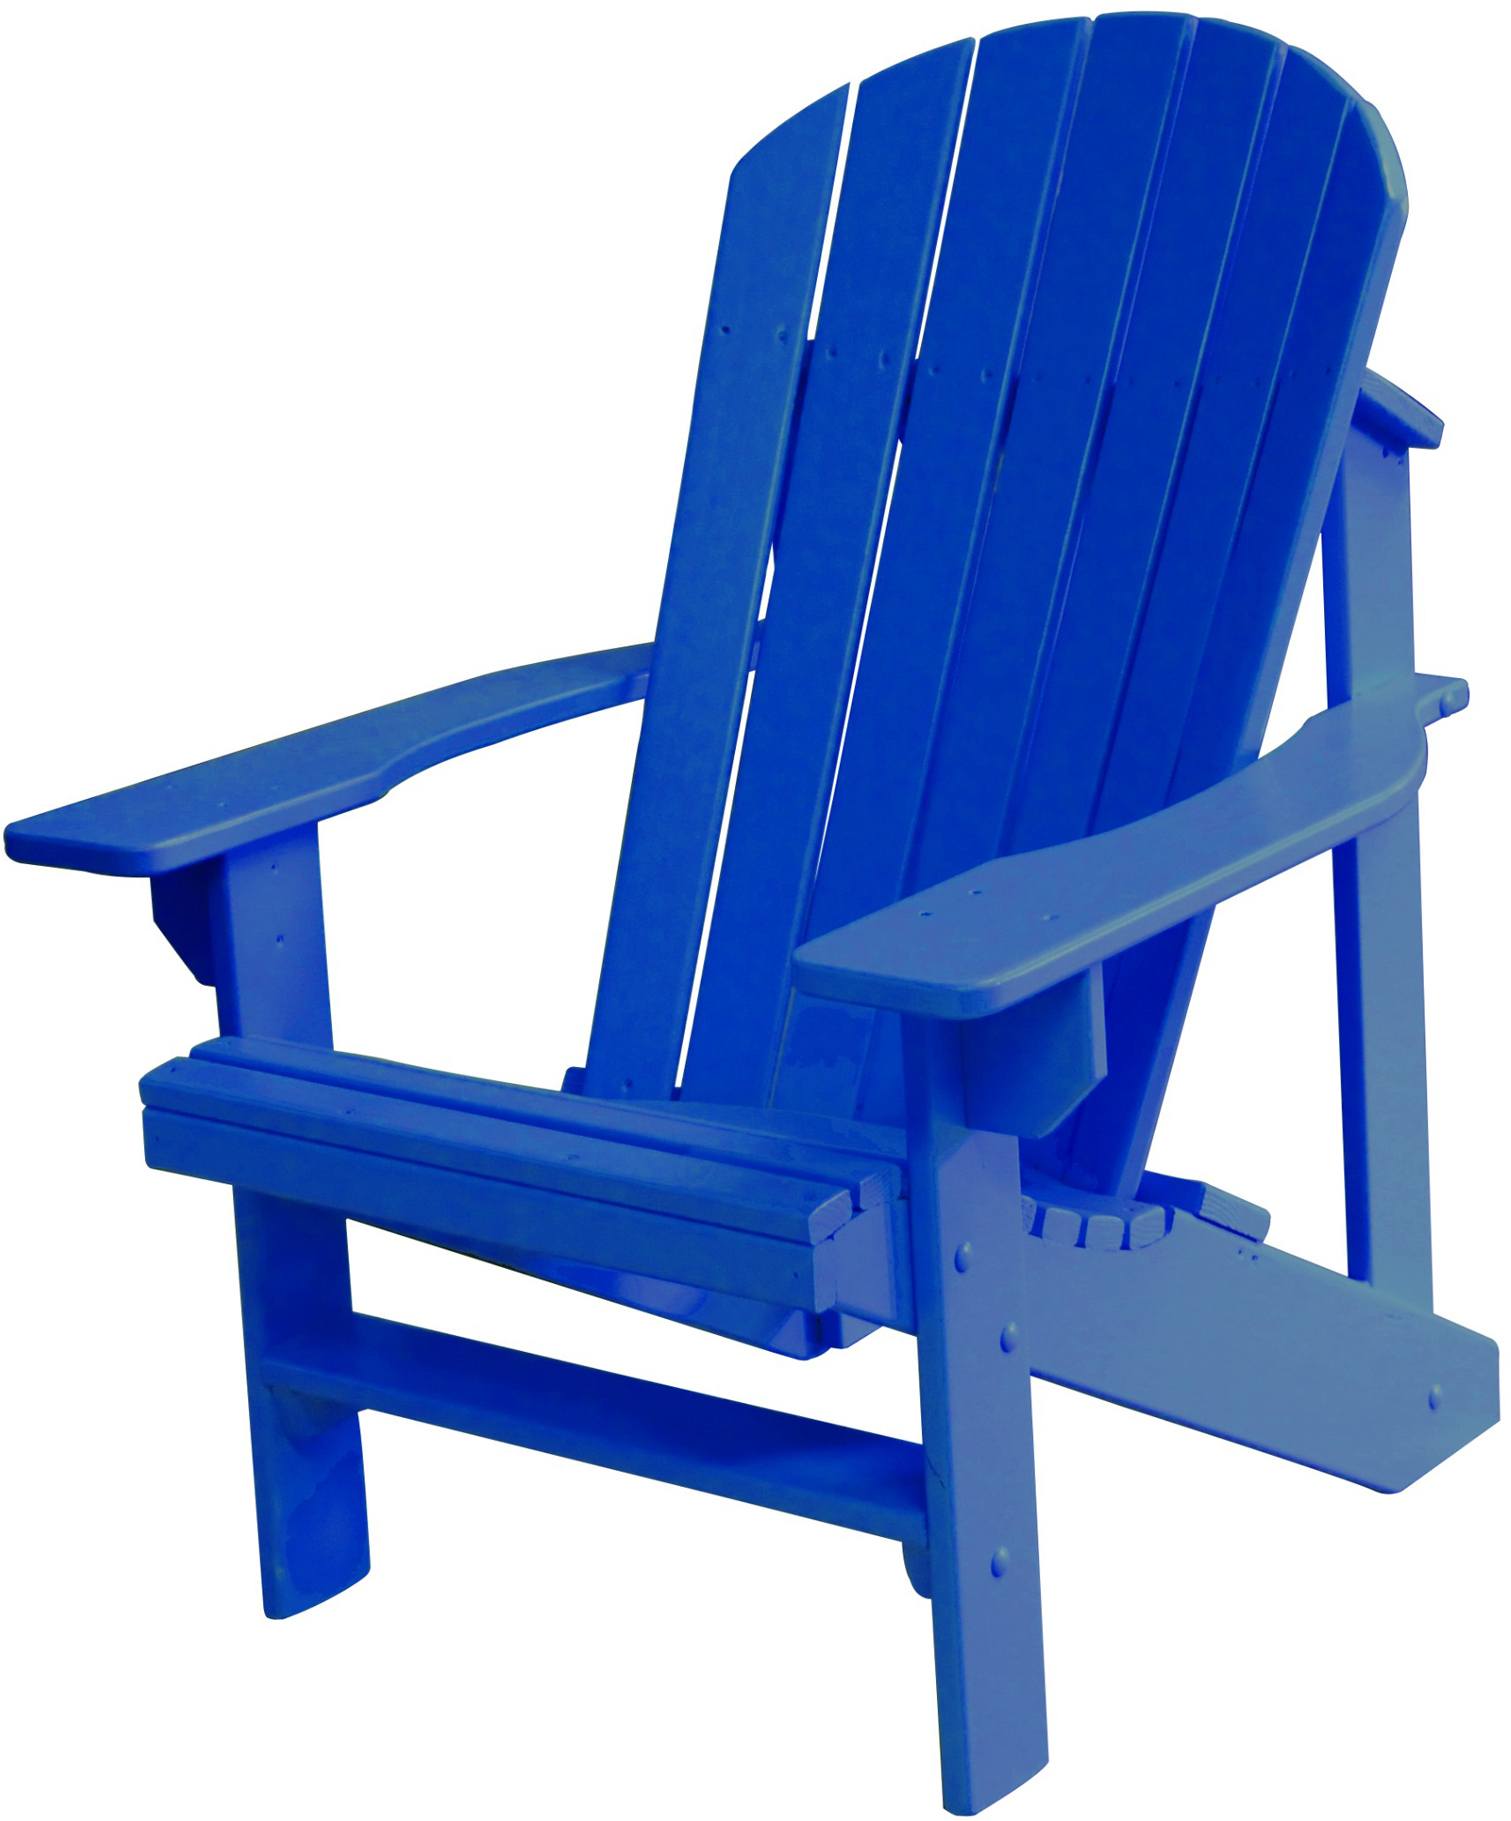 Adirondack Patio Chairs